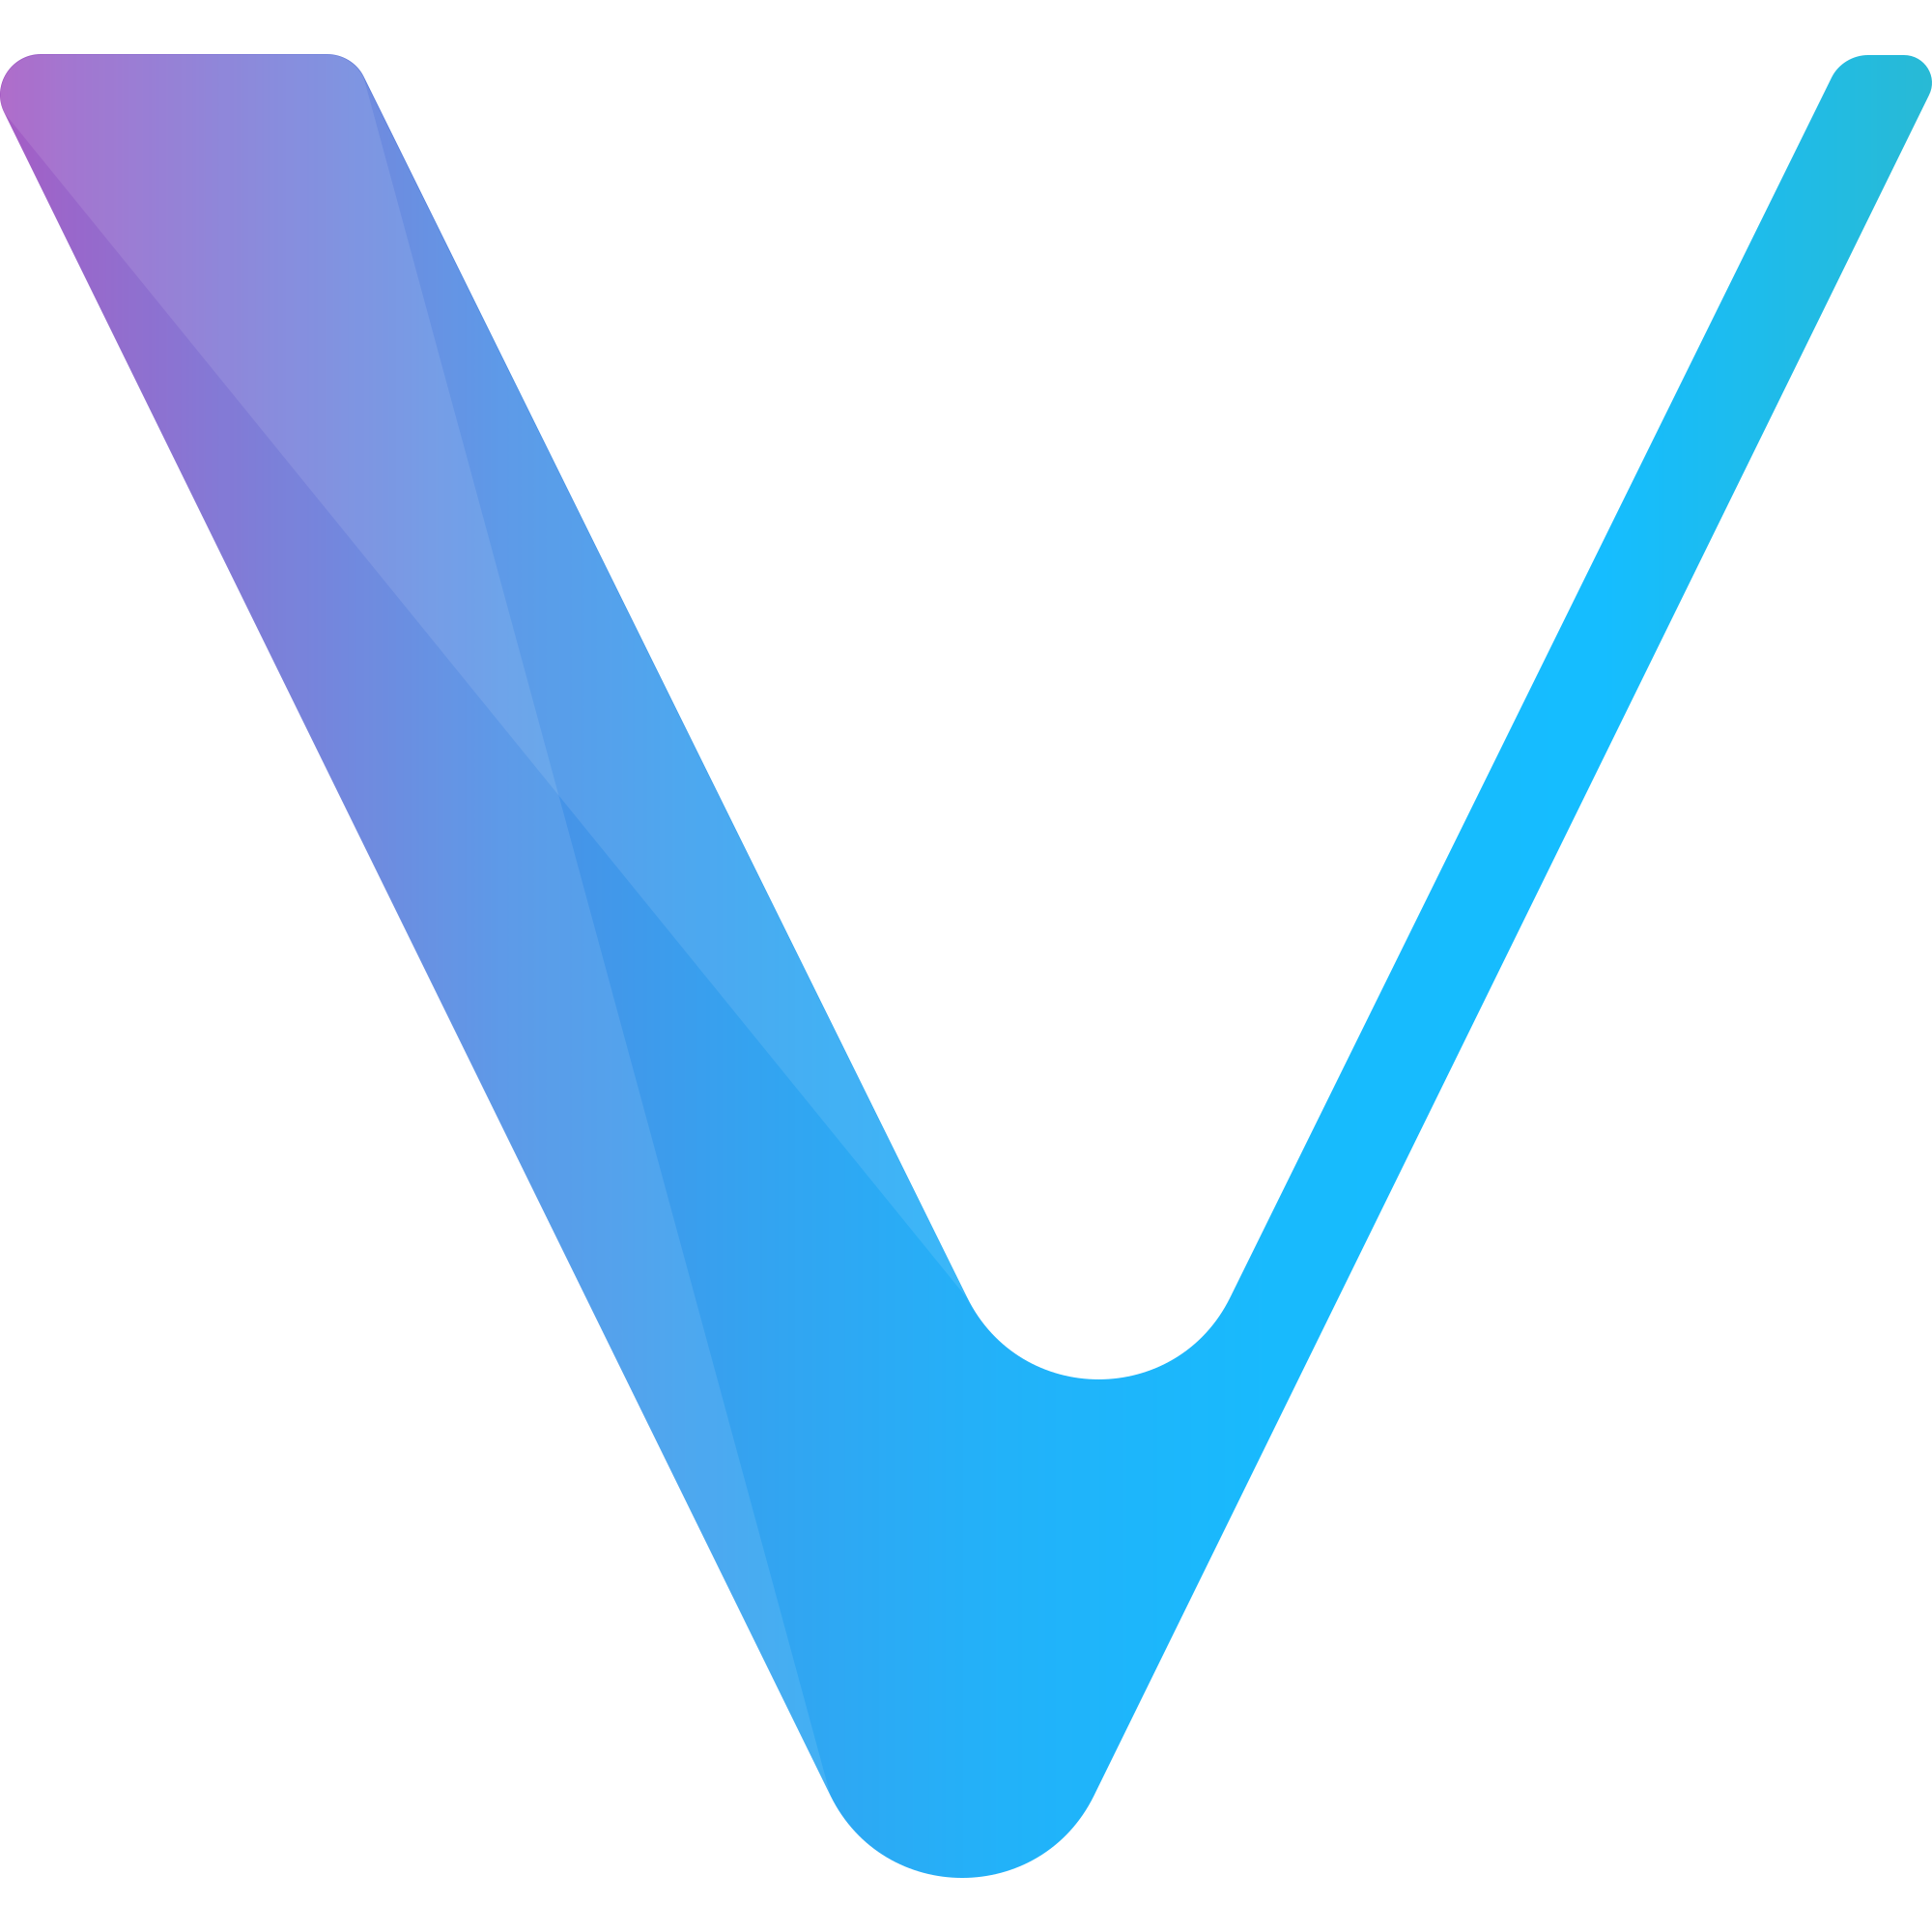 vechain-vet-logo